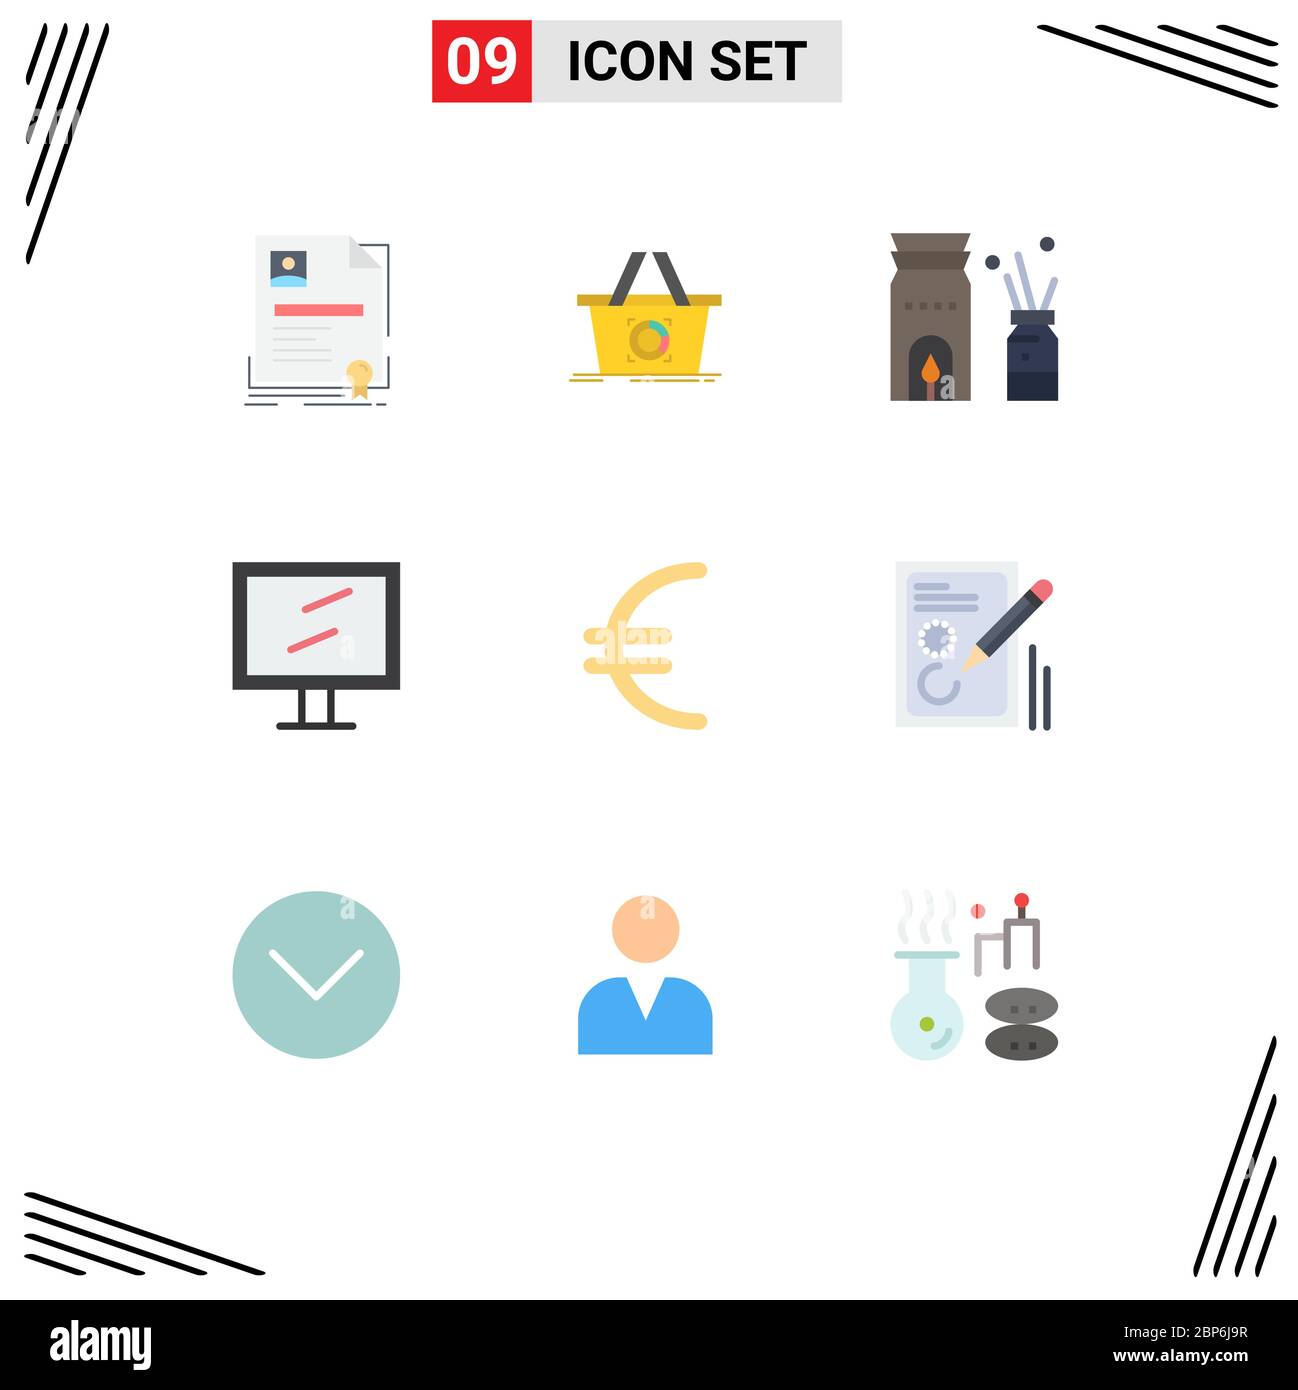 Bulk buying - Free commerce icons